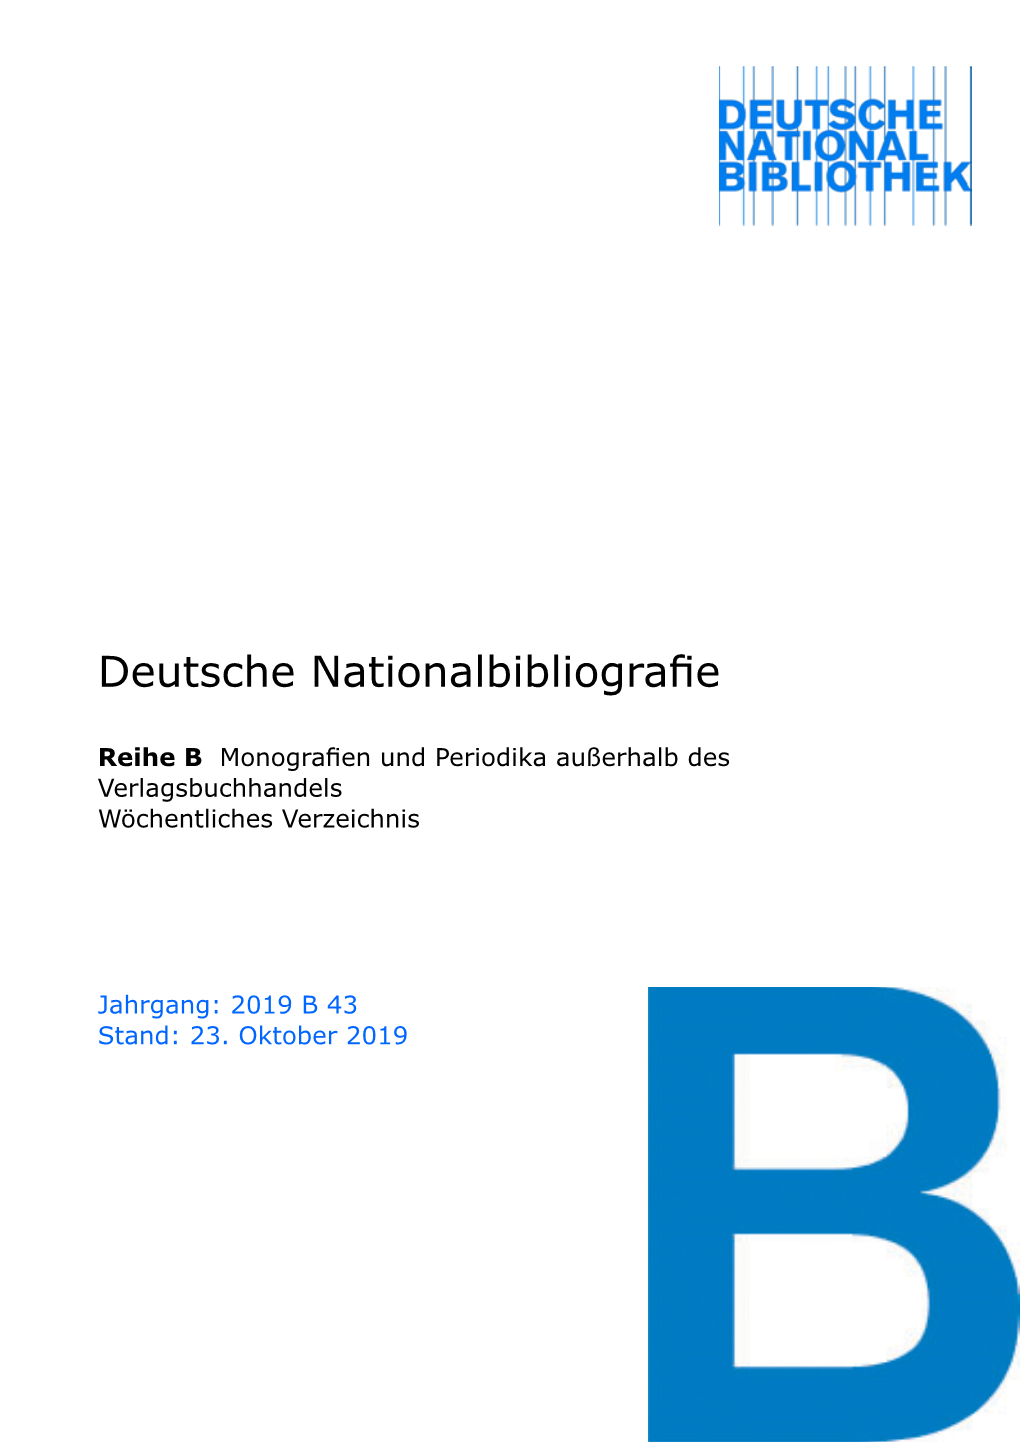 Deutsche Nationalbibliografie 2019 B 43